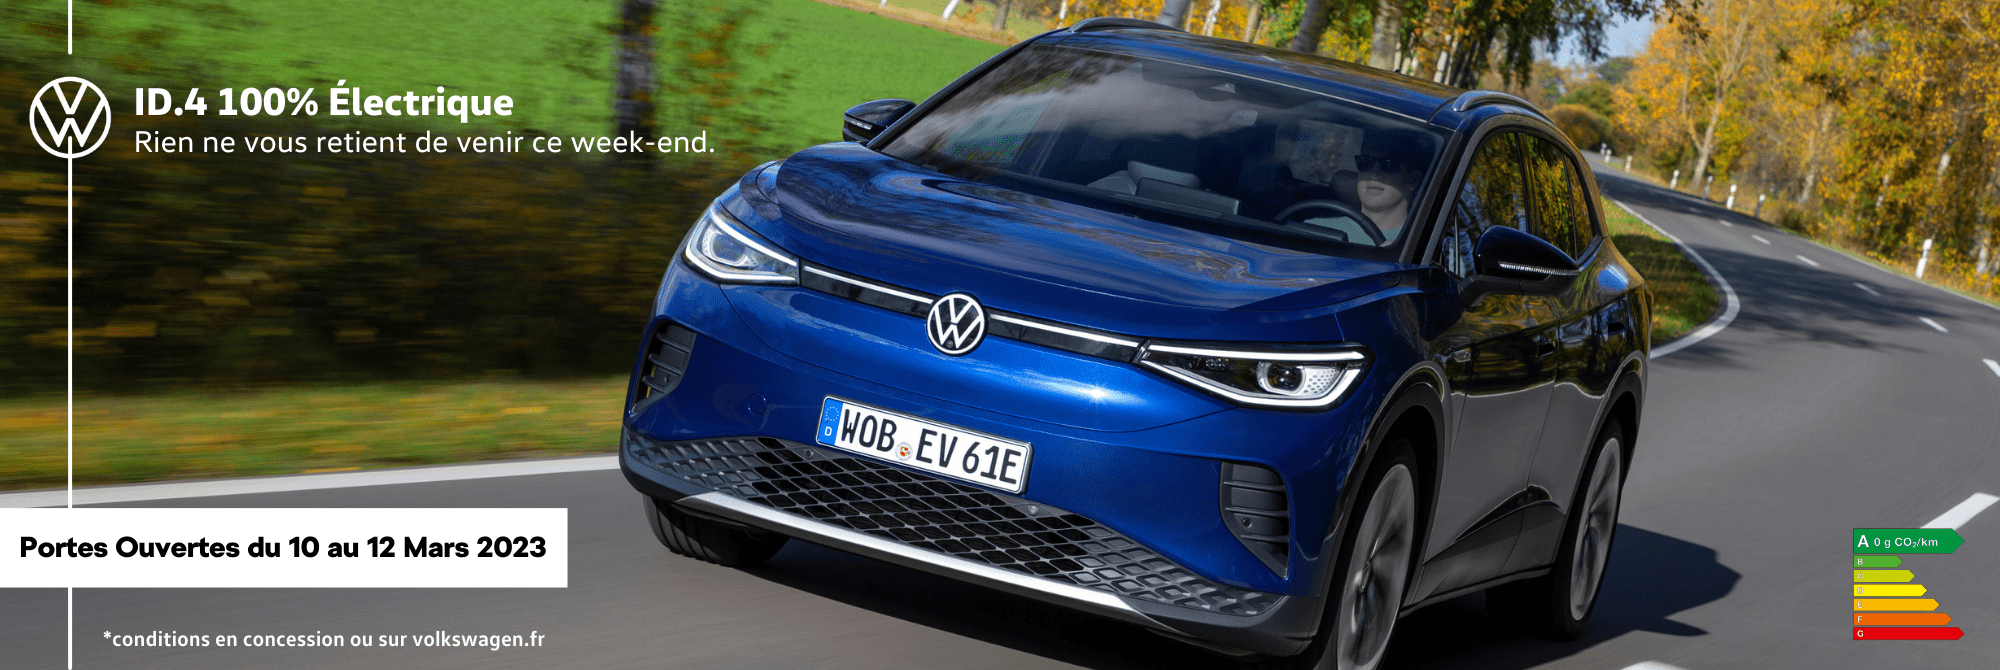 Volkswagen Paris 20 - Venez passer un moment électrisant